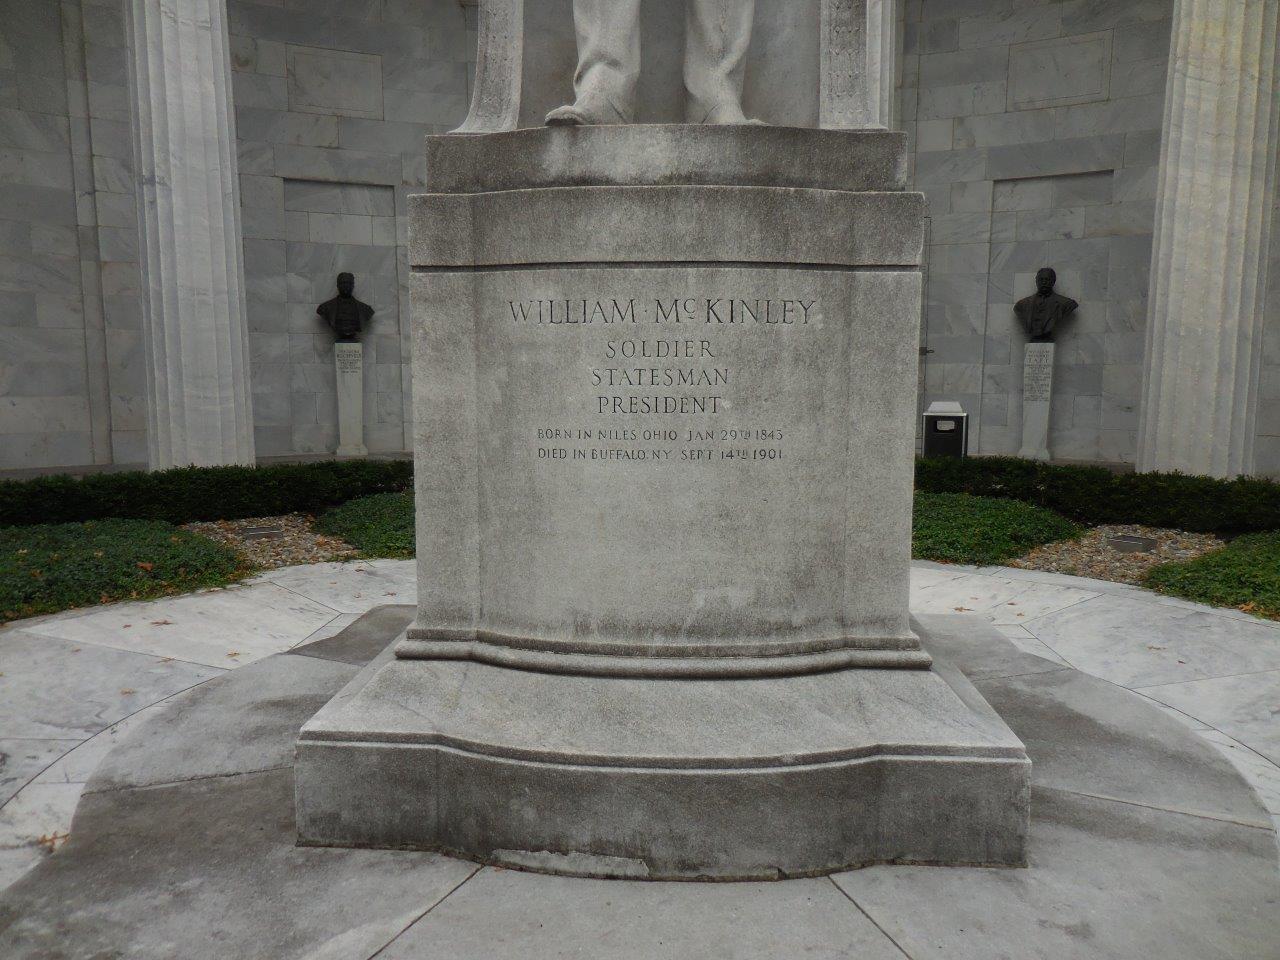 William McKinley National Memorial in Niles, Ohio